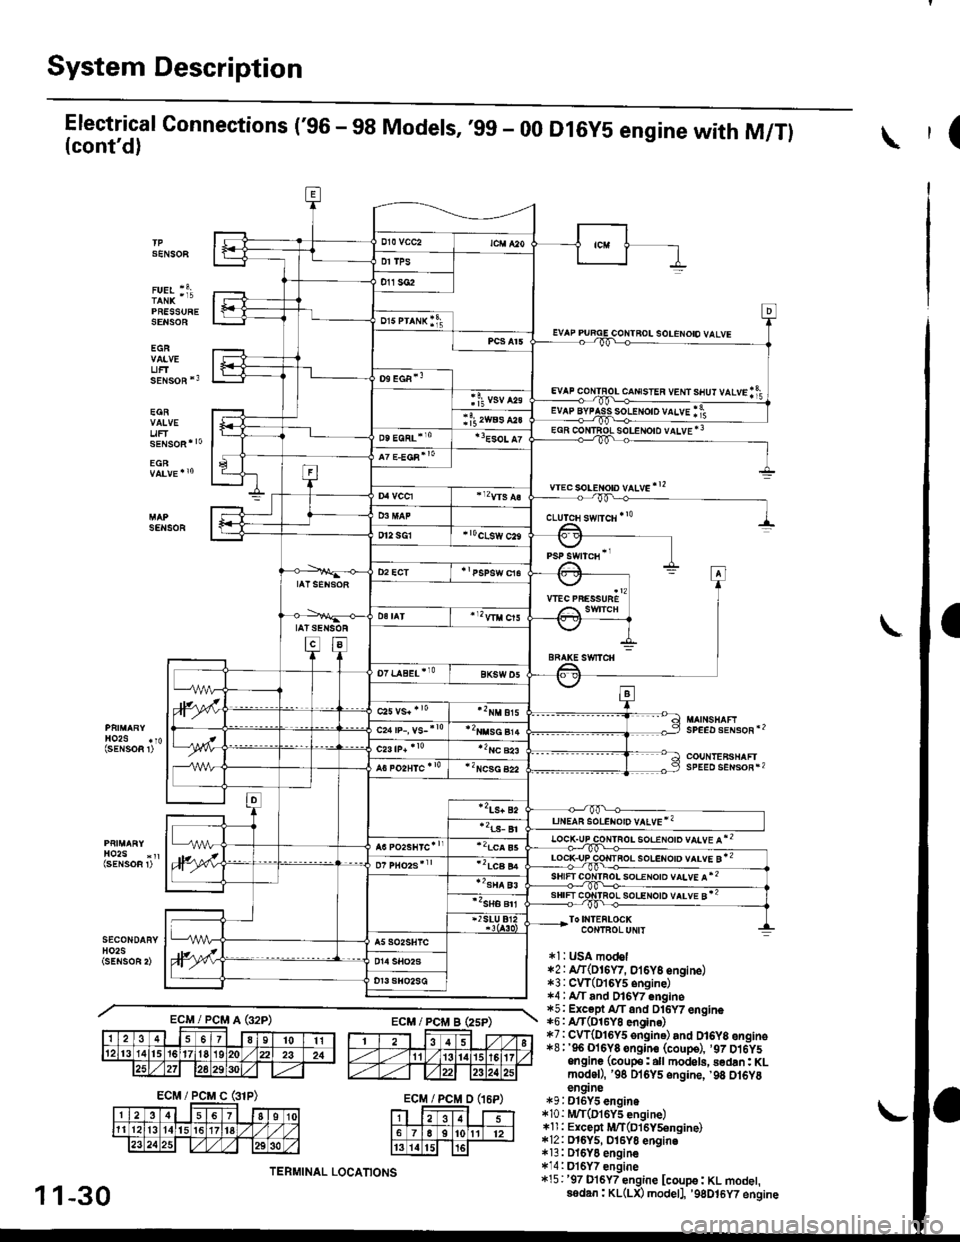 HONDA CIVIC 1999 6.G User Guide System Description
Electrical Connections (96 - 98 Models, ,99 - 00(contd)
PRESSURESENSOE
EGR
UFTsENsoR *3
EGR
uF
D16Y5 engine with M/Tl(
SENSOF
solENoto vALvE *3
wec soLeton vltve!2
SENSOR
SPEED s